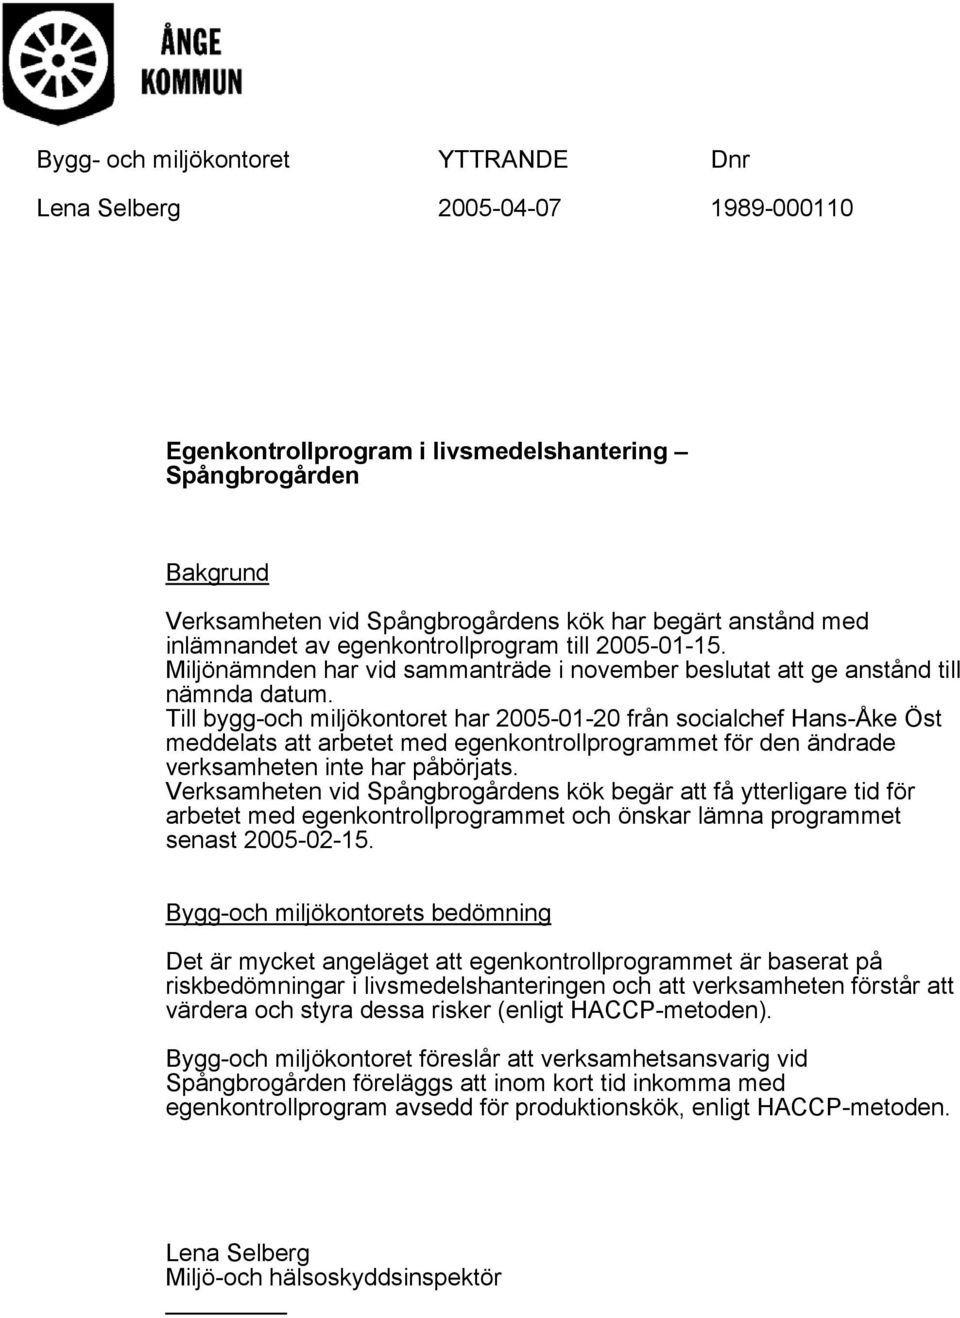 Till bygg-och miljökontoret har 2005-01-20 från socialchef Hans-Åke Öst meddelats att arbetet med egenkontrollprogrammet för den ändrade verksamheten inte har påbörjats.